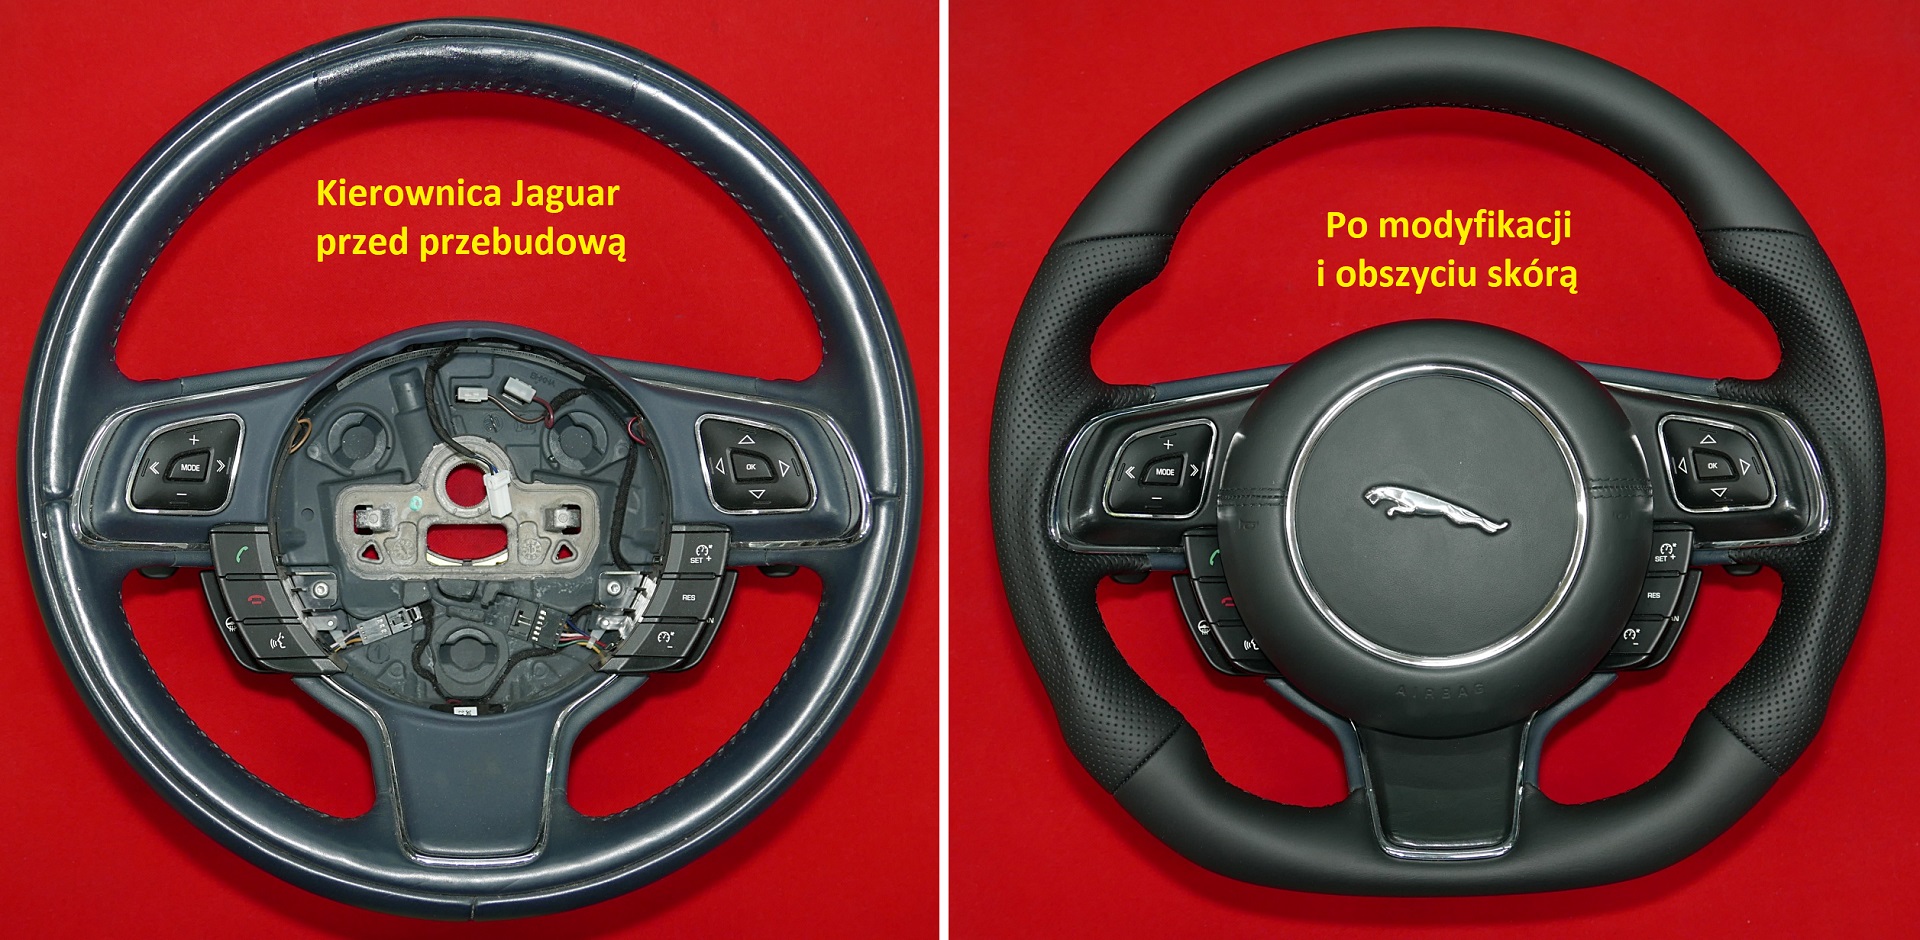 Kierownica Jaguar przebudowa modyfikacja zmiana kształtu, tuning kierownic, obszycie kierownicy skórą